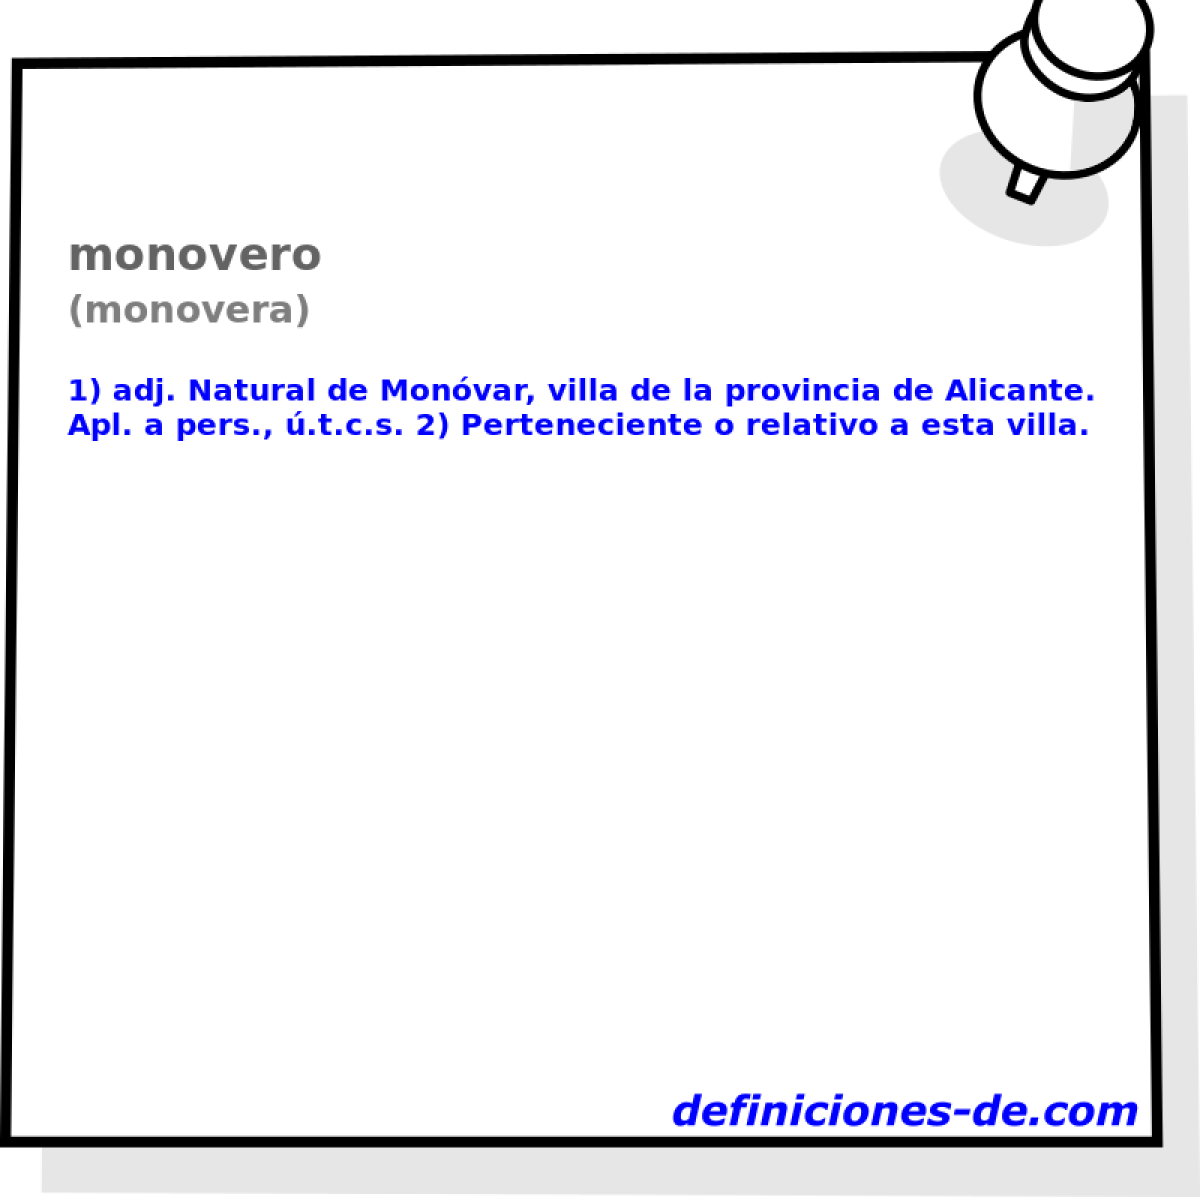 monovero (monovera)